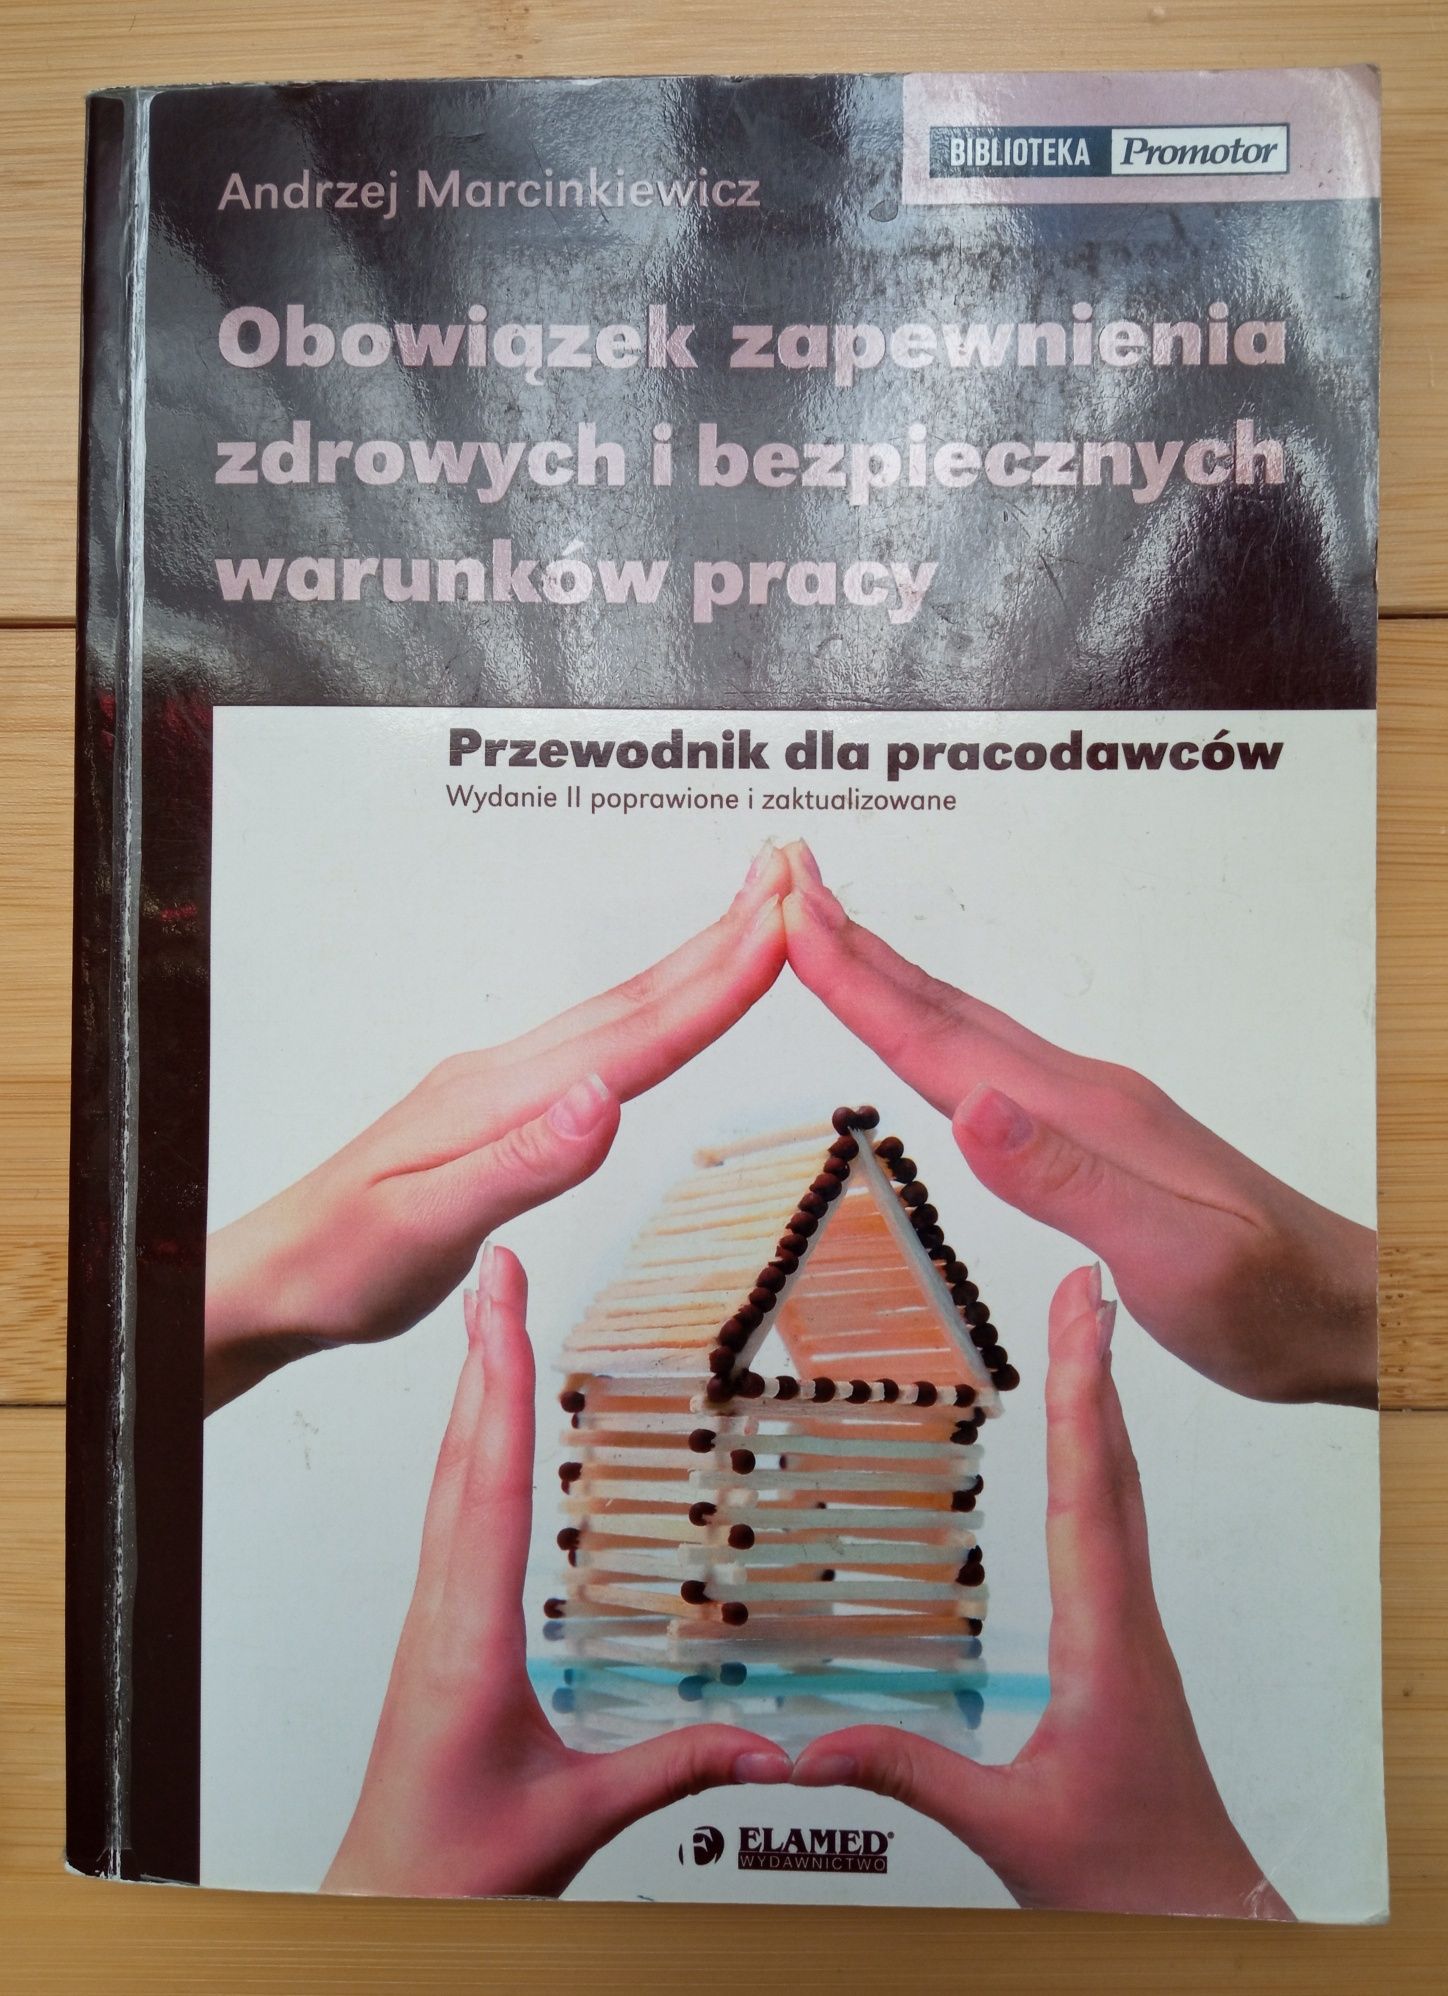 Andrzej Marcinkiewicz - Obowiązek zapewnienia zdrowych i bezpiecznych